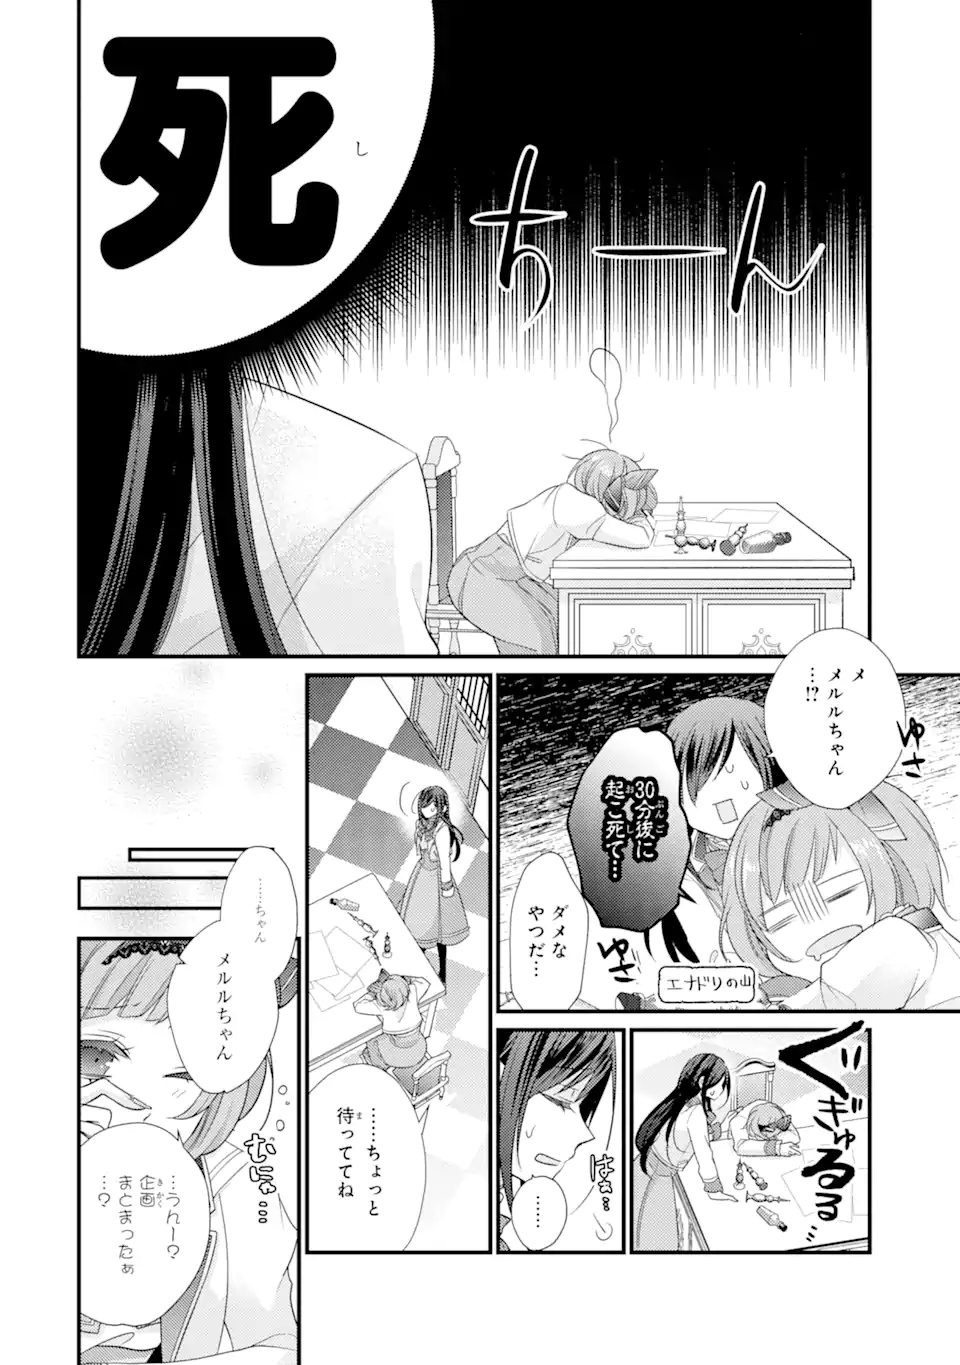 Kekkon suru Shinde Shimau no de, Kanst Seijo (Lv. 99) wa Meshi Tero Shimasu! - Chapter 3.2 - Page 2